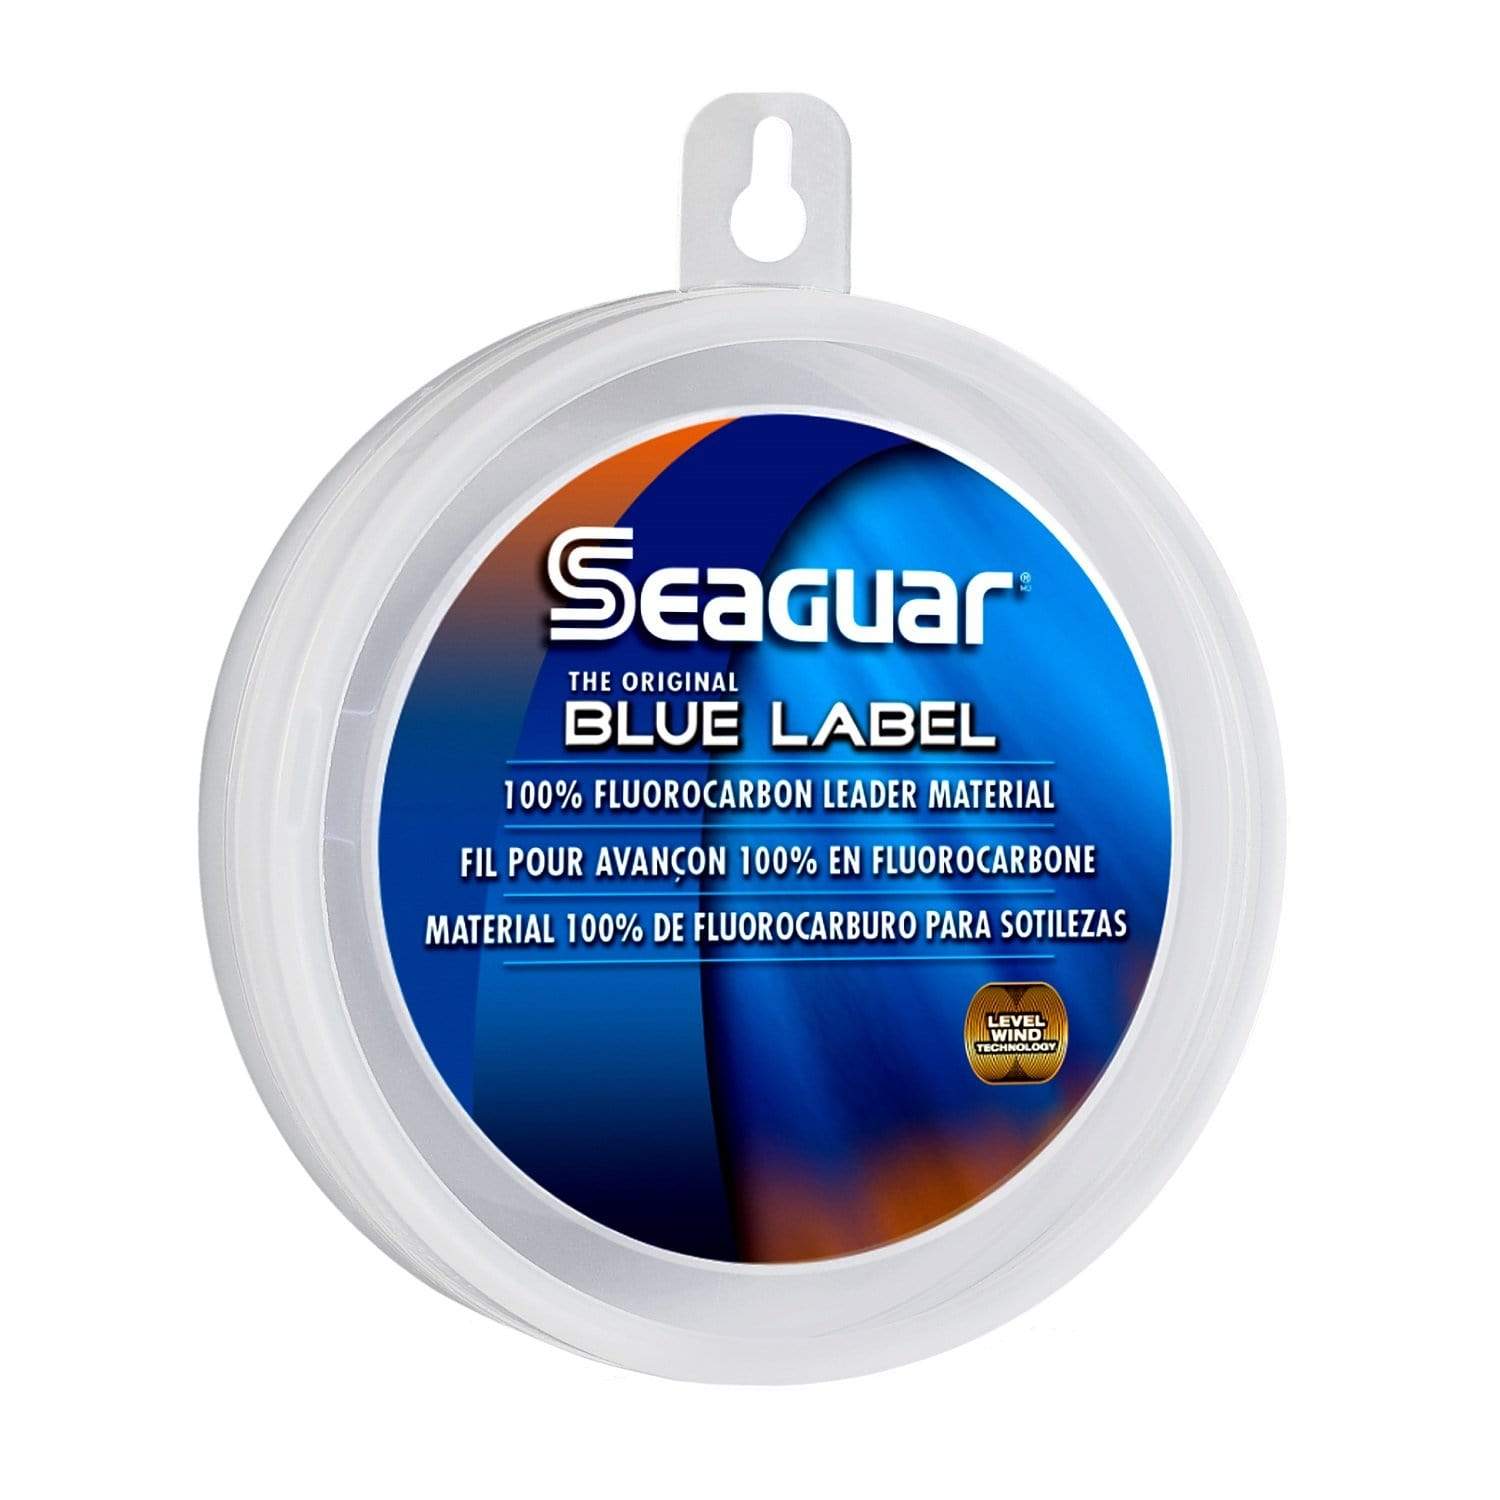 Seaguar Fishing : Line Seaguar Blue Label Fishing Line 50 80LB